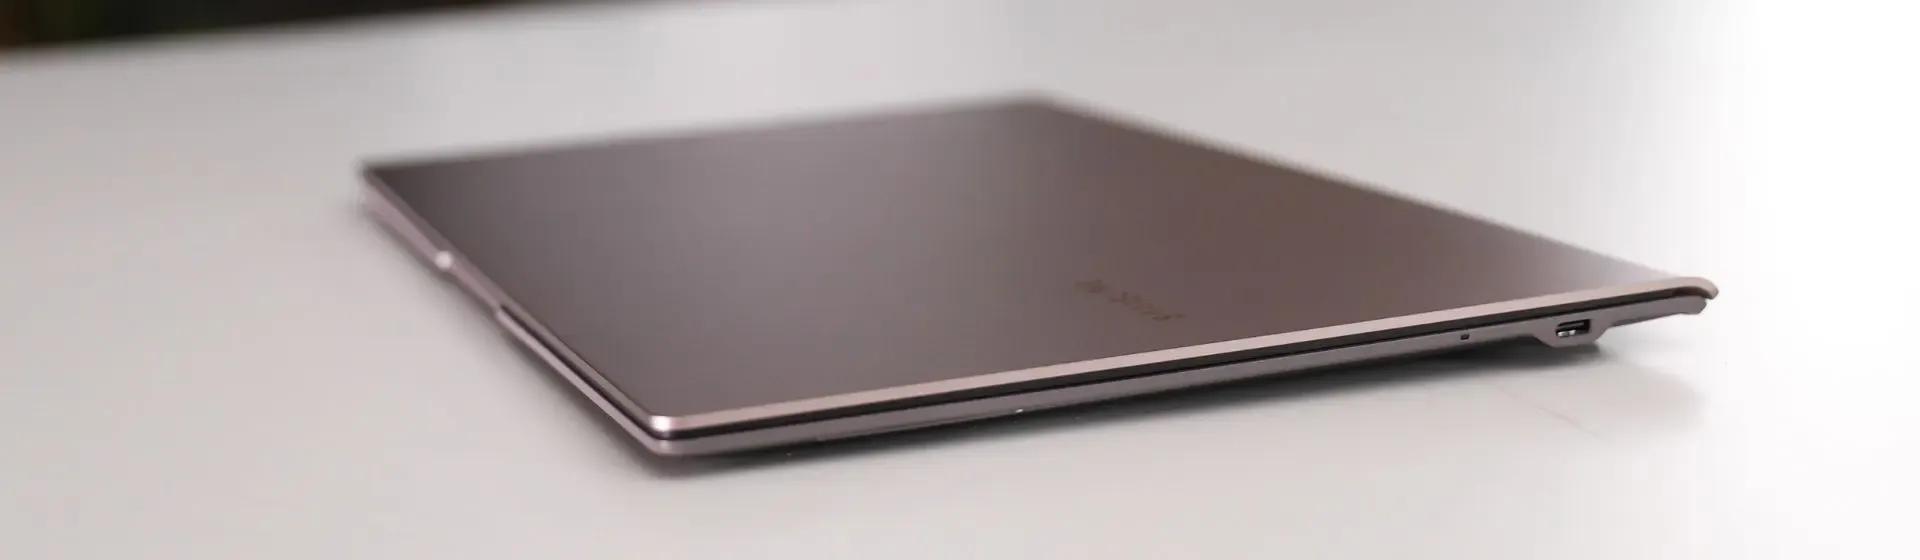 Melhor notebook Samsung i5 para comprar em 2022: veja 5 modelos